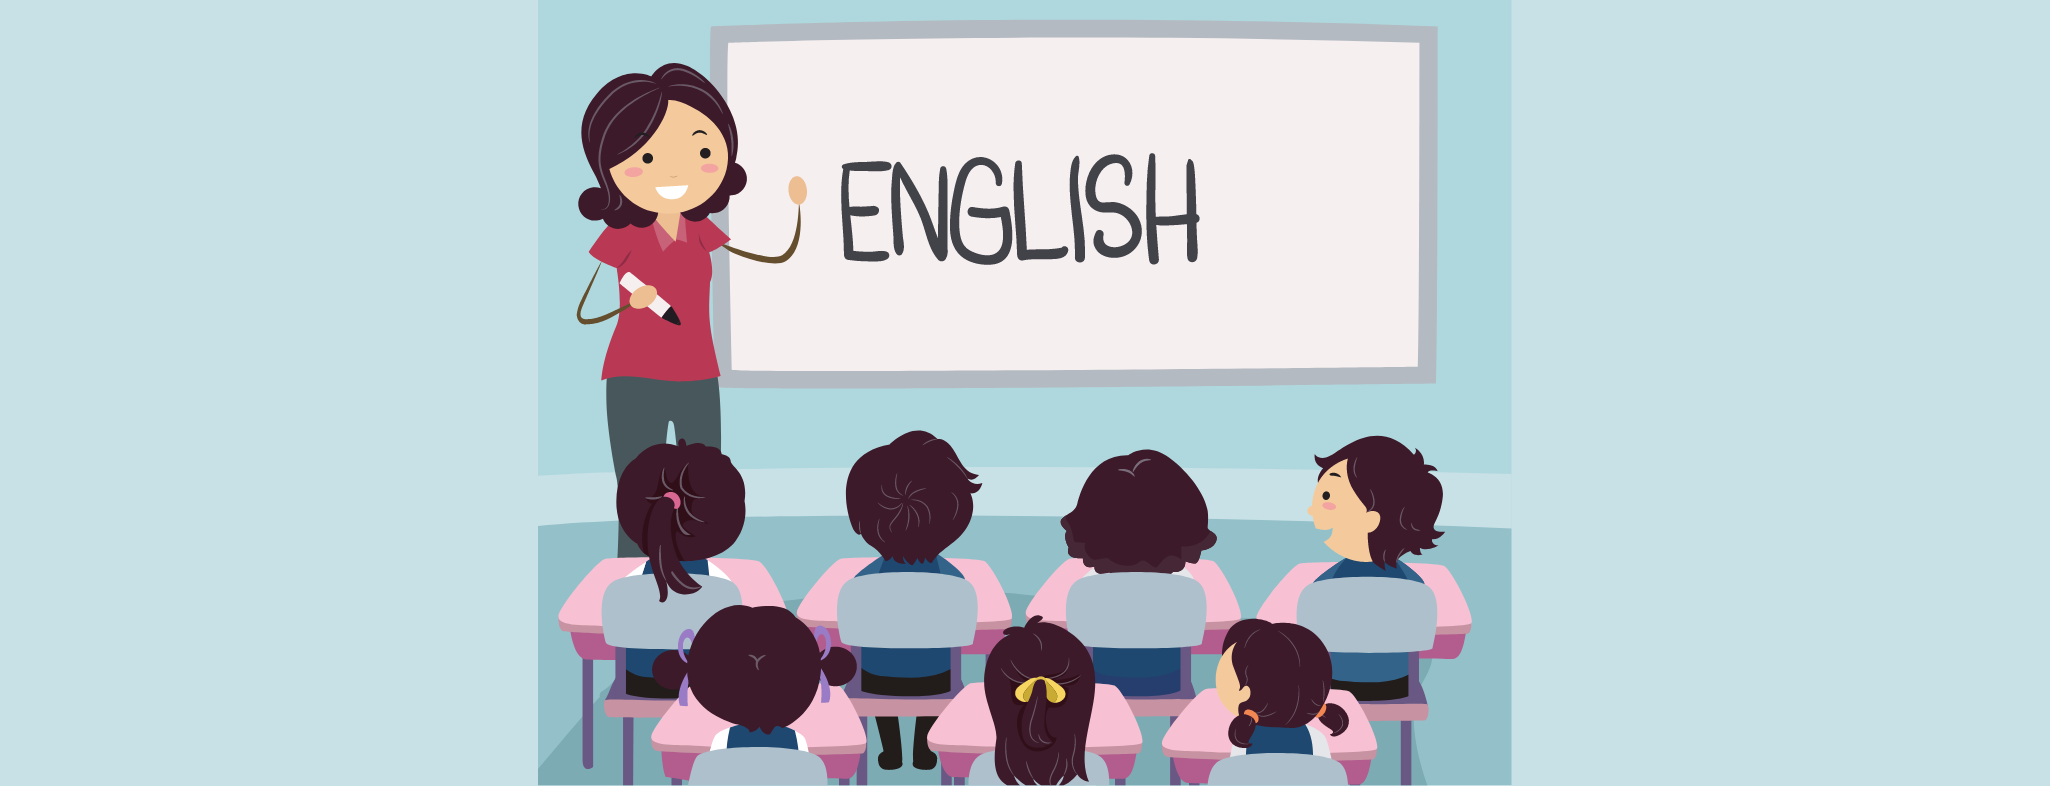 Tips taalinitiatie Engels | Wouw | die Keure